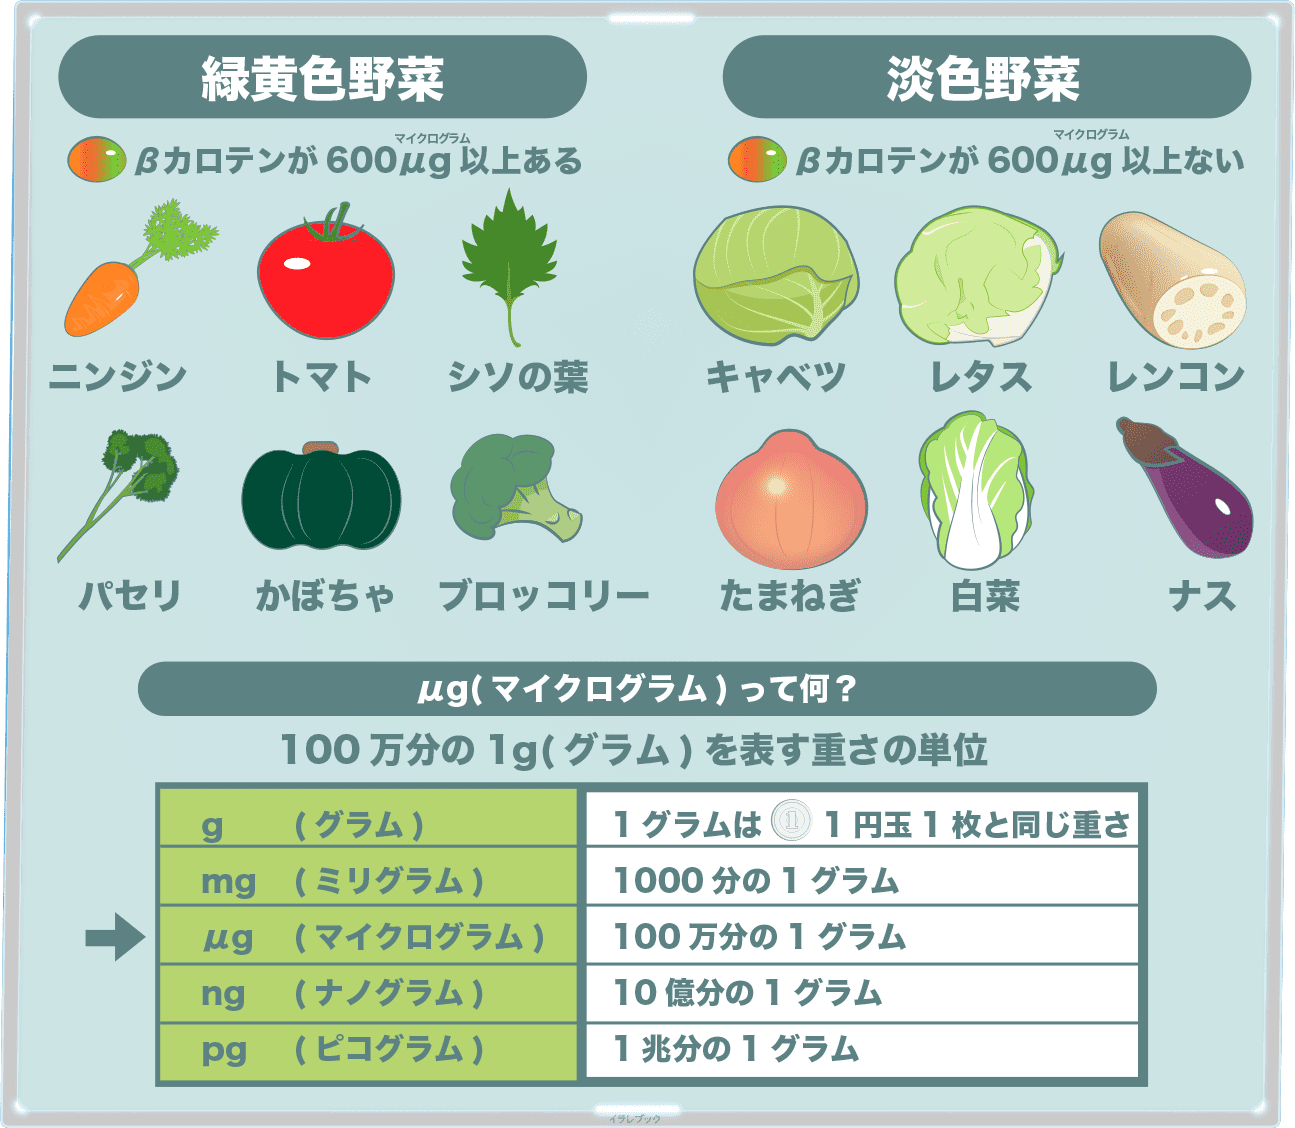 野菜 緑黄色野菜と淡色野菜の基準とは 芋やキノコも詳しくなろう Vegetable